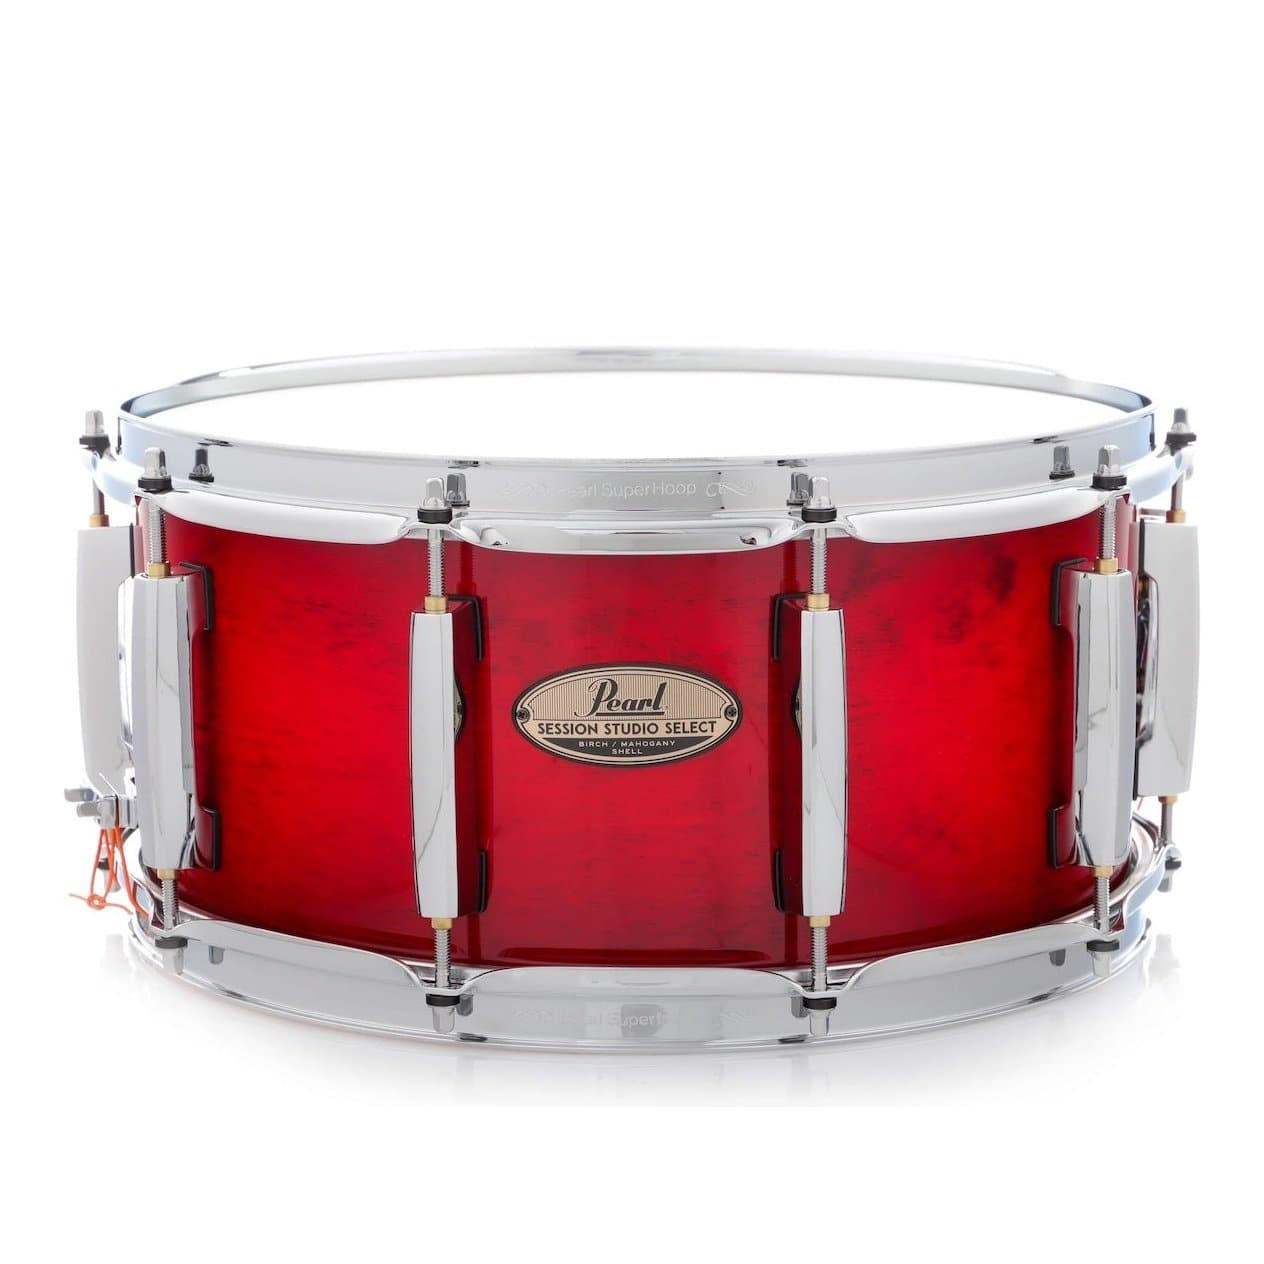 Pearl Session Studio Select 14x6.5 Snare Drum - Antique Crimson Burst